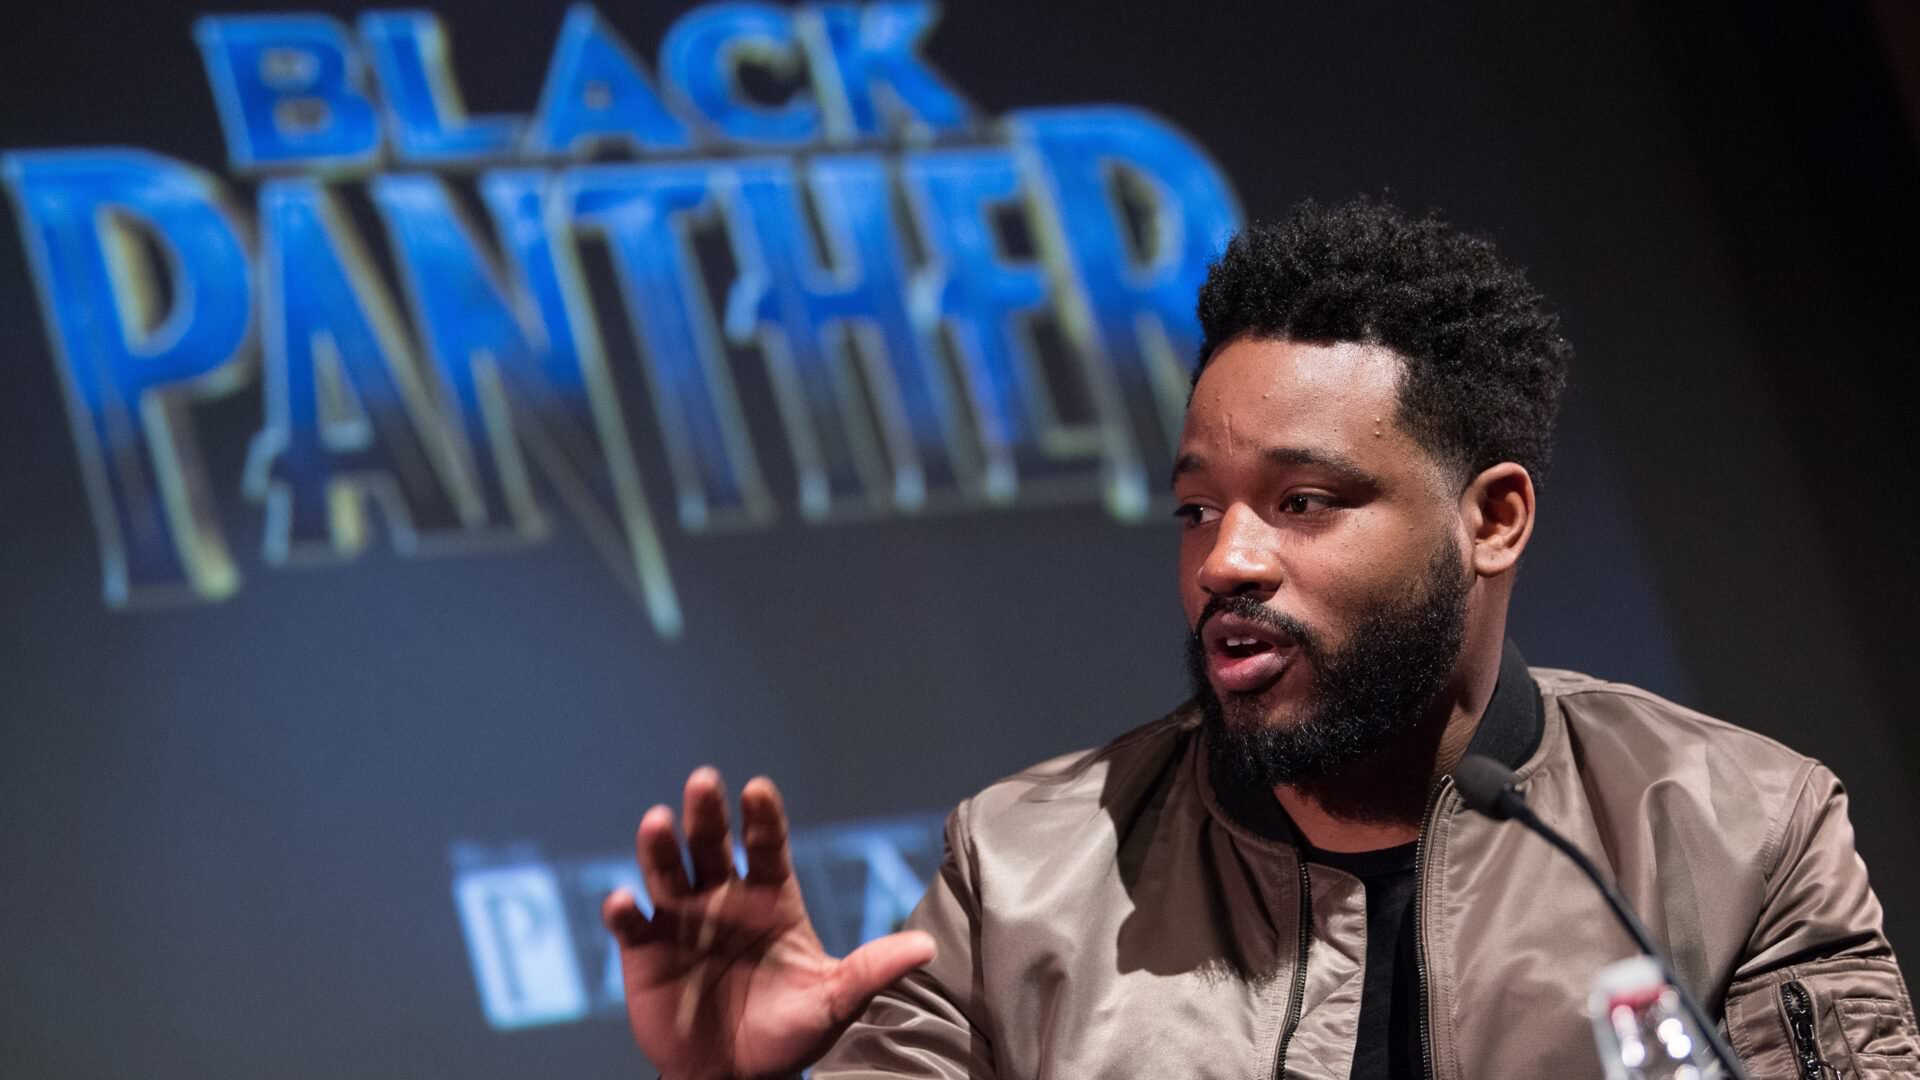 رایان کوگلر در نشست مطبوعاتی فیلم Black Panther